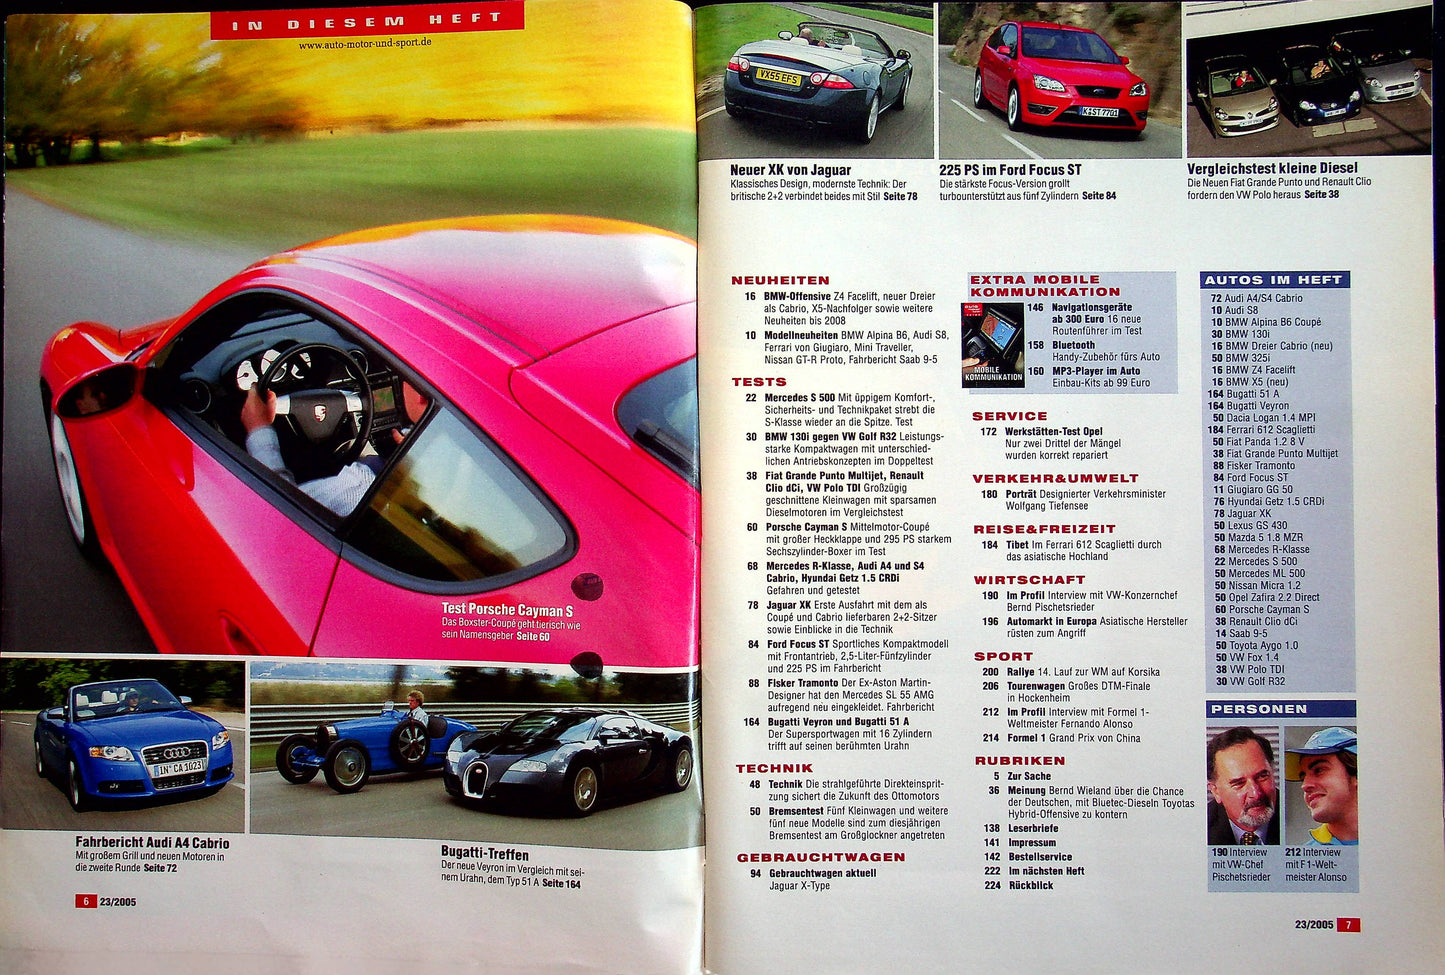 Auto Motor und Sport 23/2005